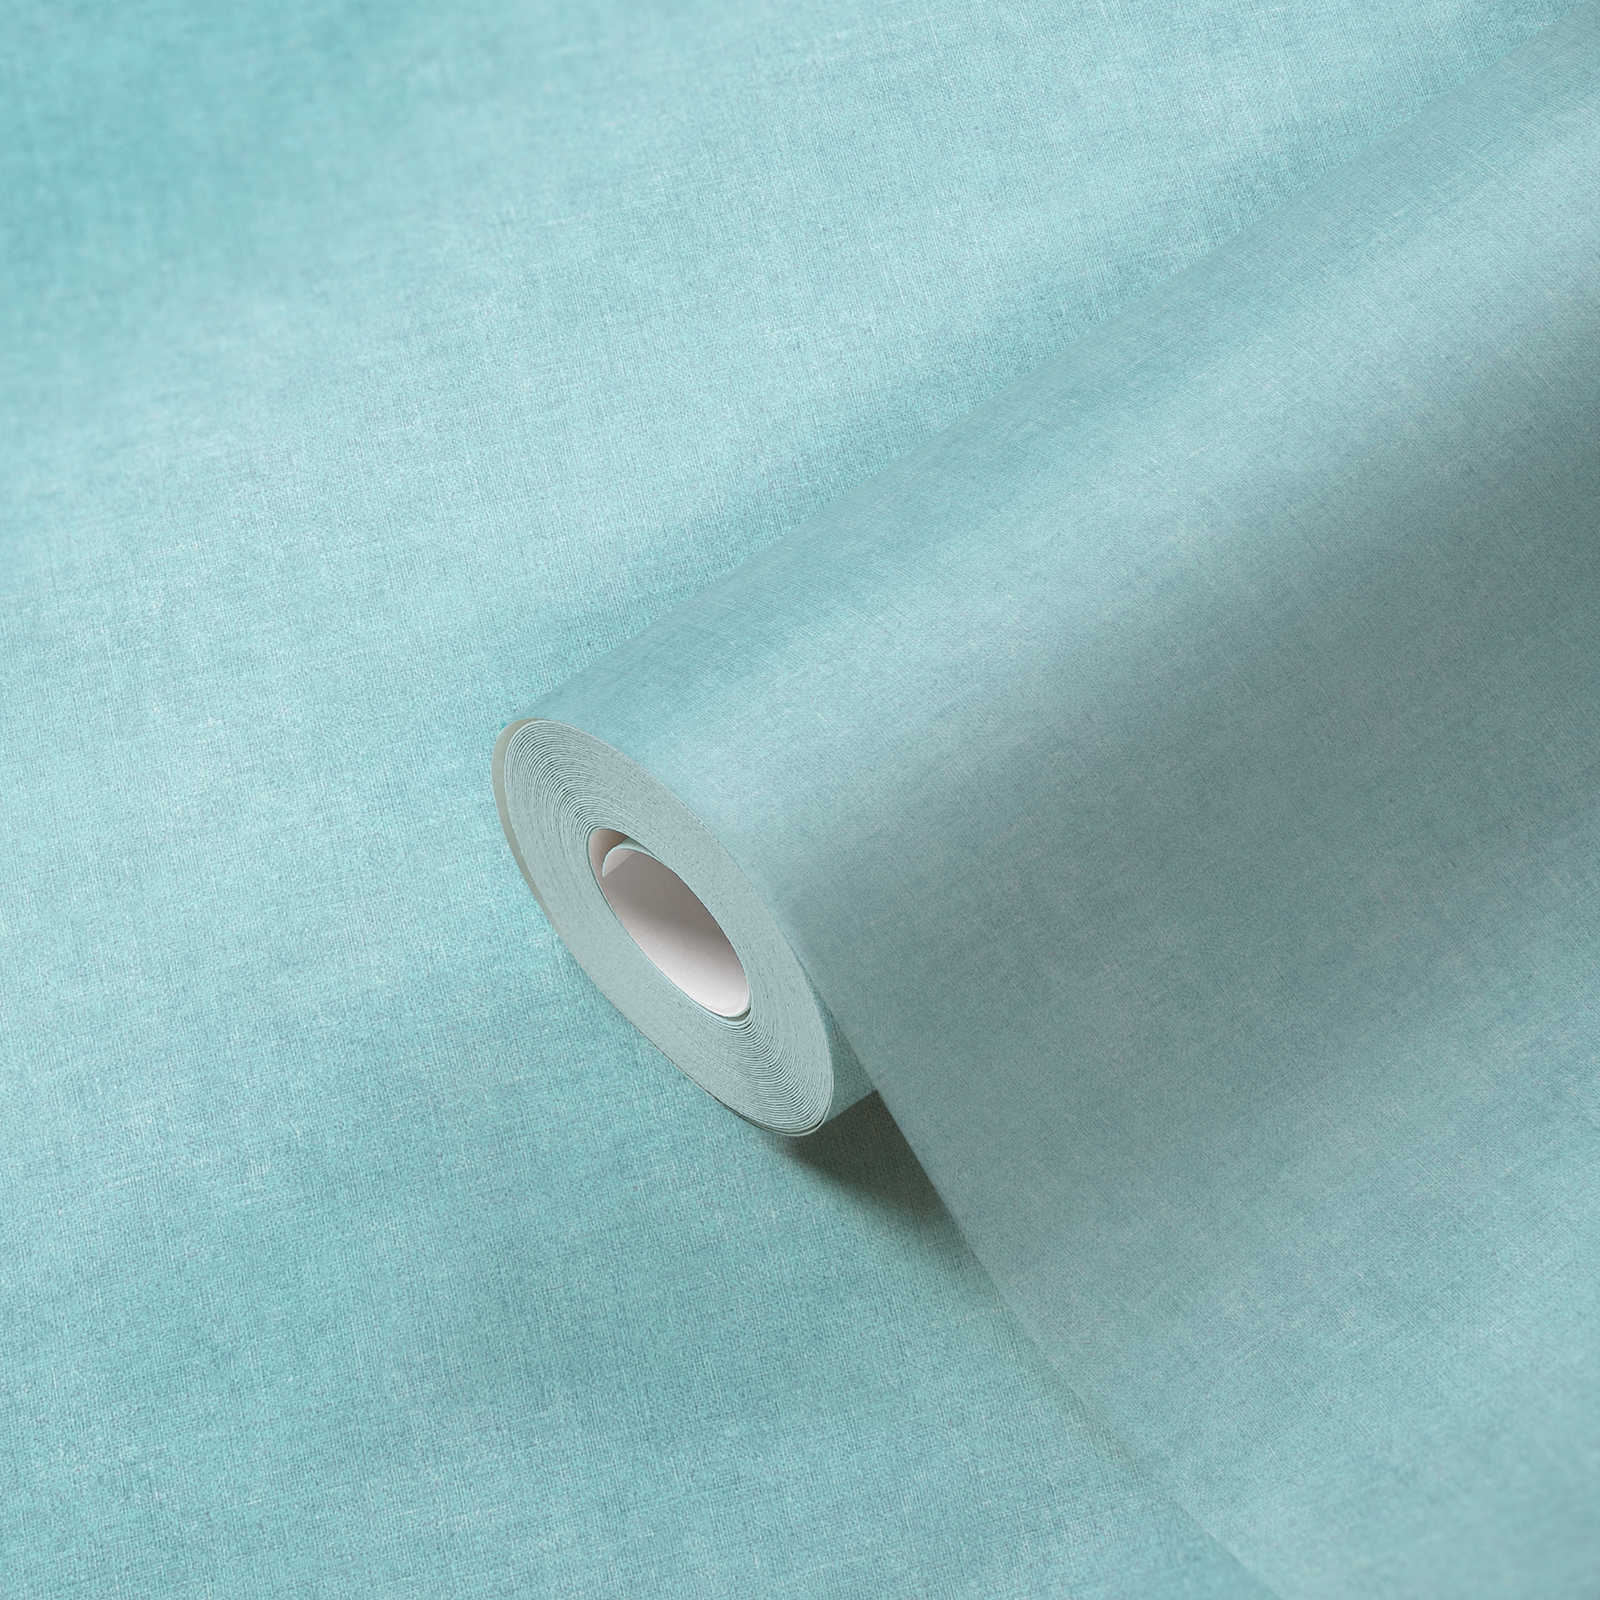             Papier peint bleu uni & mat avec motifs structurés
        